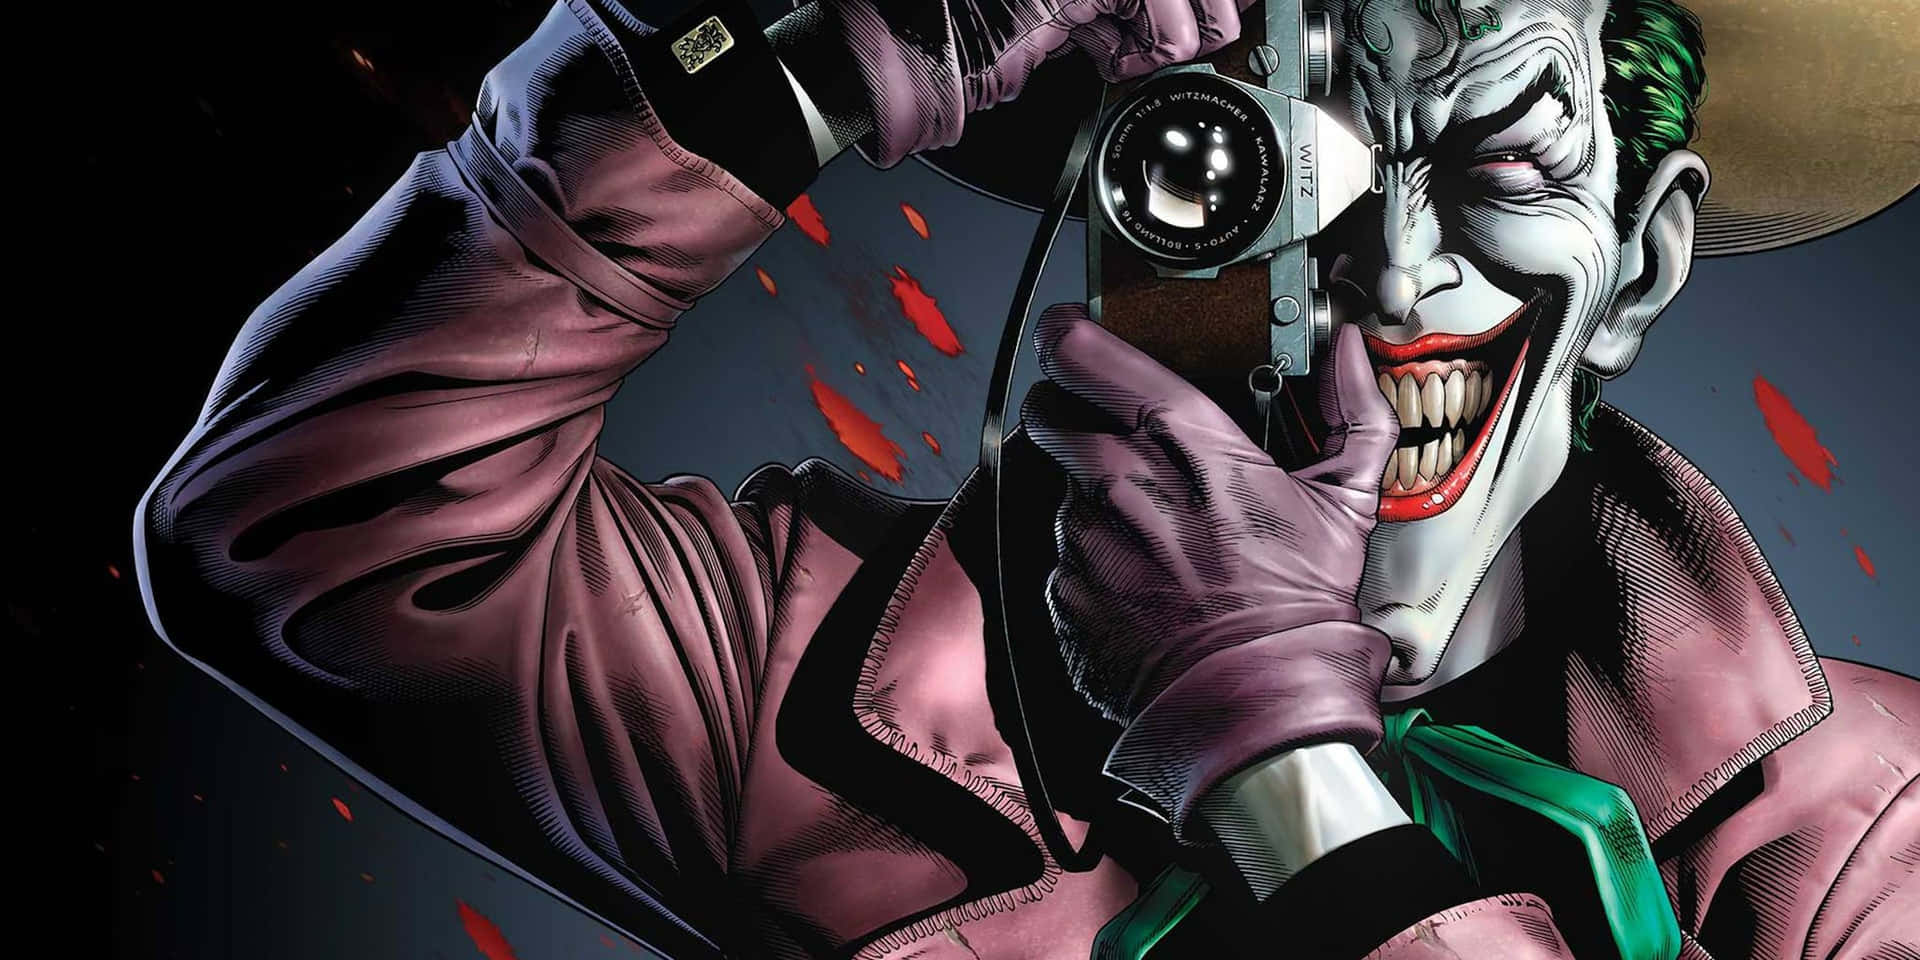 The iconic scene from The Killing Joke graphic novel featuring Joker Wallpaper